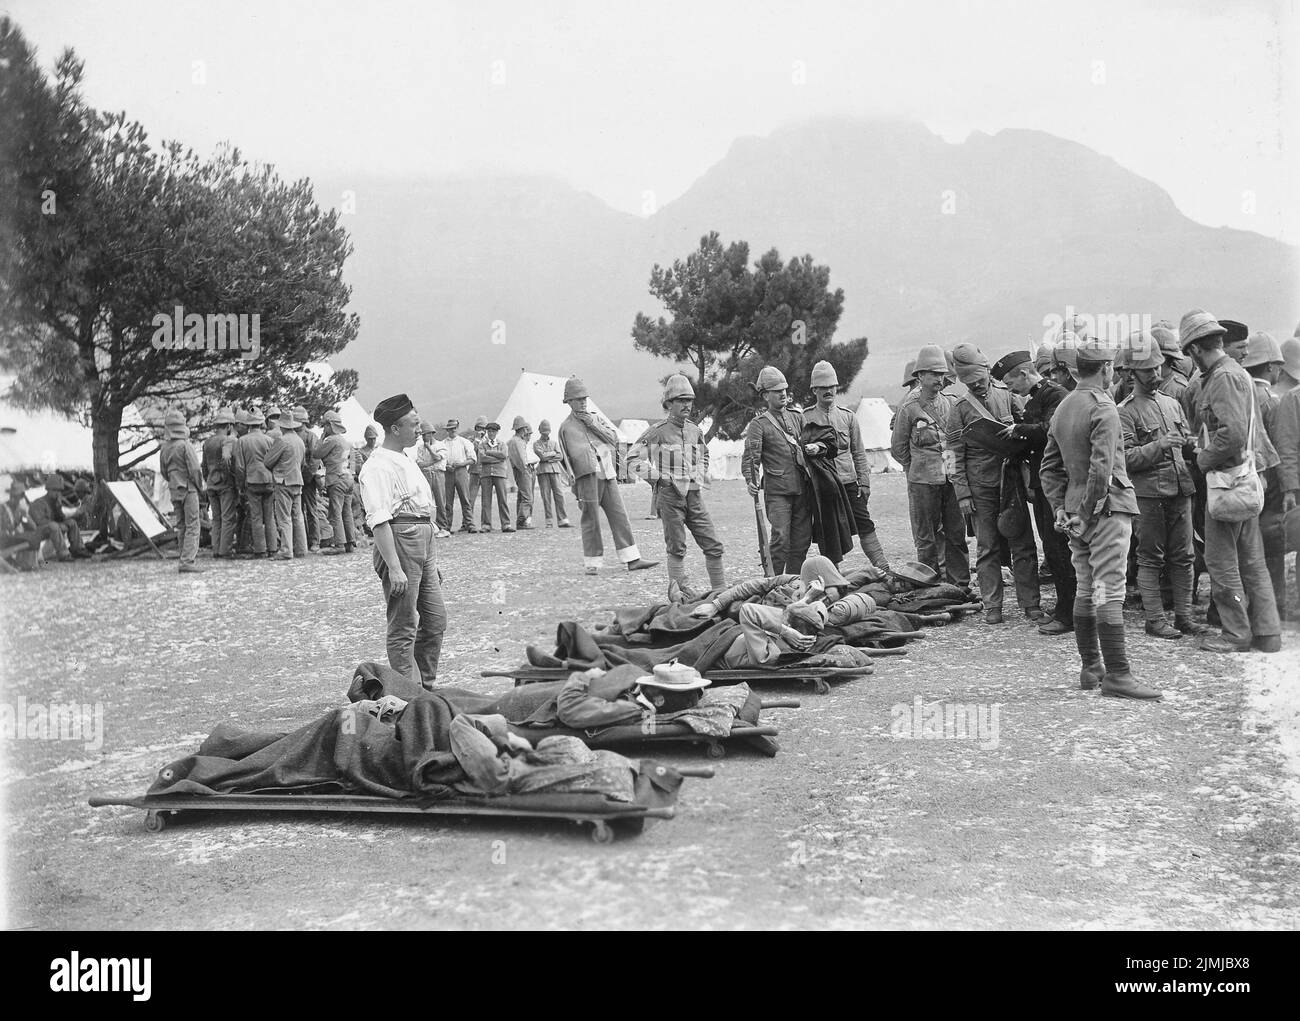 Des Britanniques ont été blessés sur des civières pendant la guerre des Boers en Afrique du Sud Banque D'Images